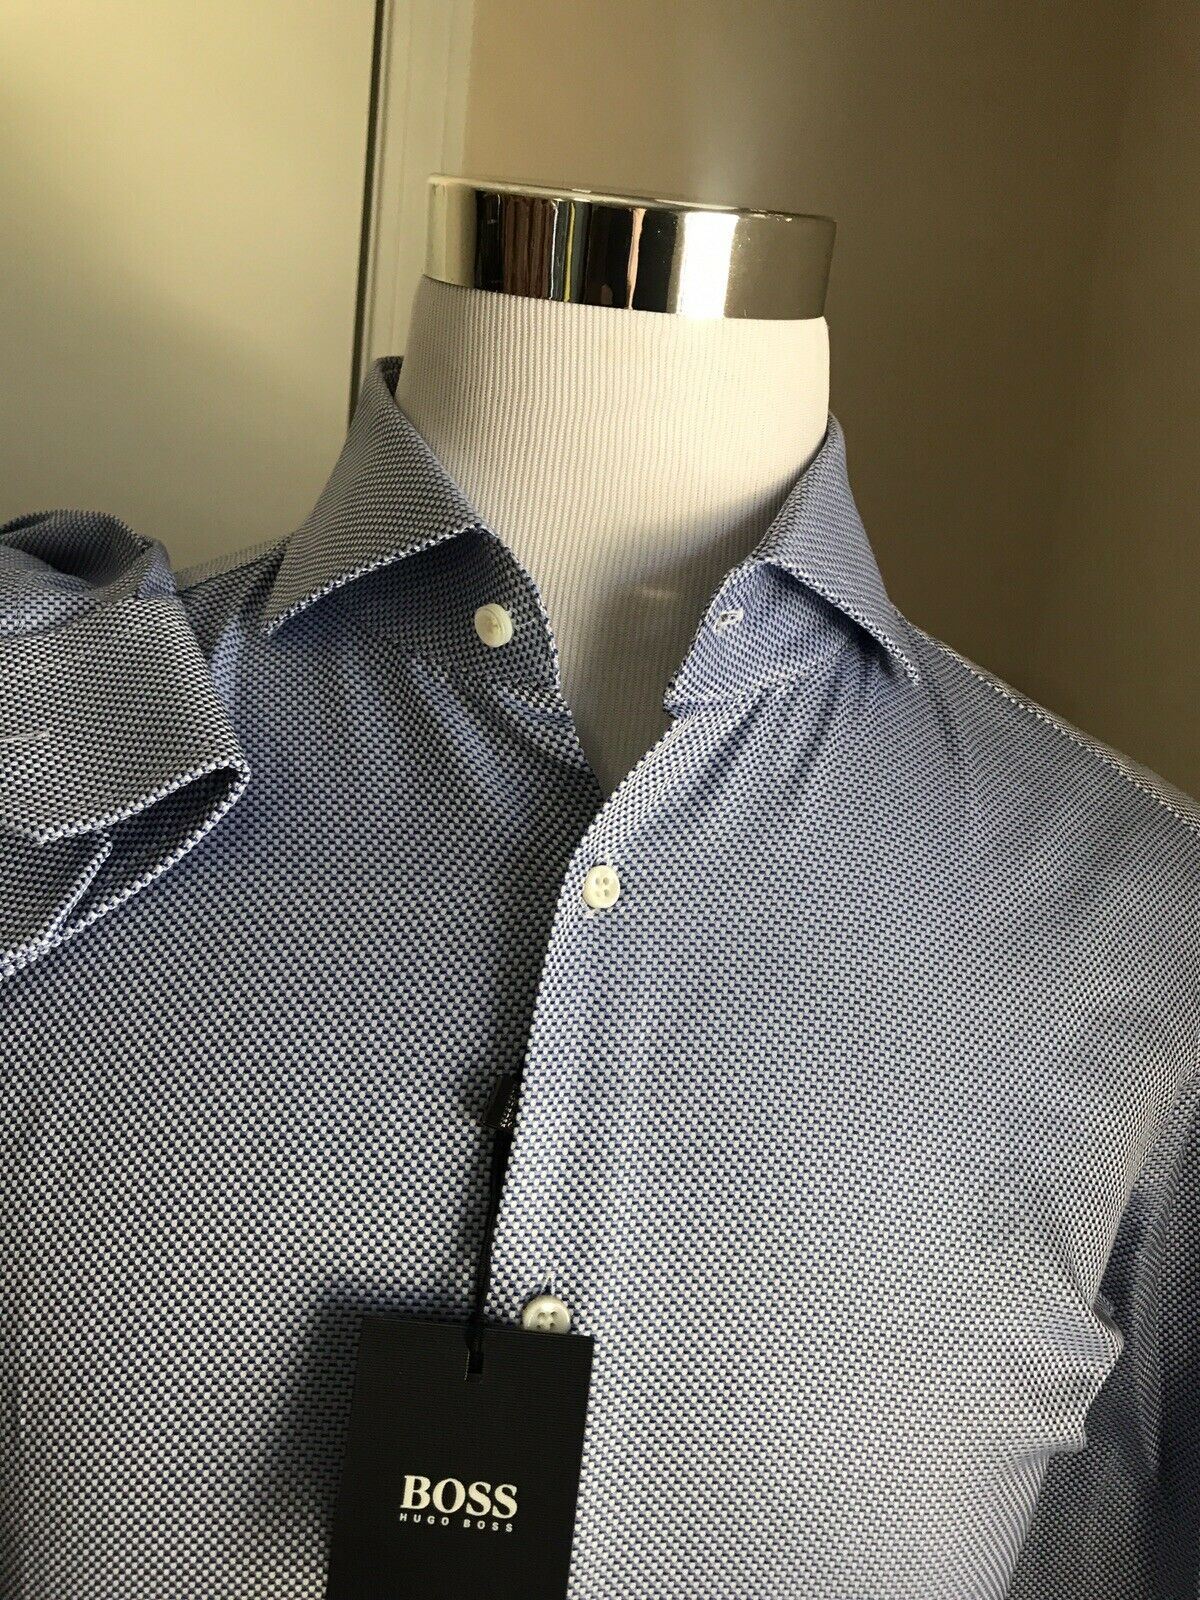 Мужская синяя классическая рубашка приталенного кроя Hugo Boss NWT, размер 42/16,5, размер 42/16,5, $200